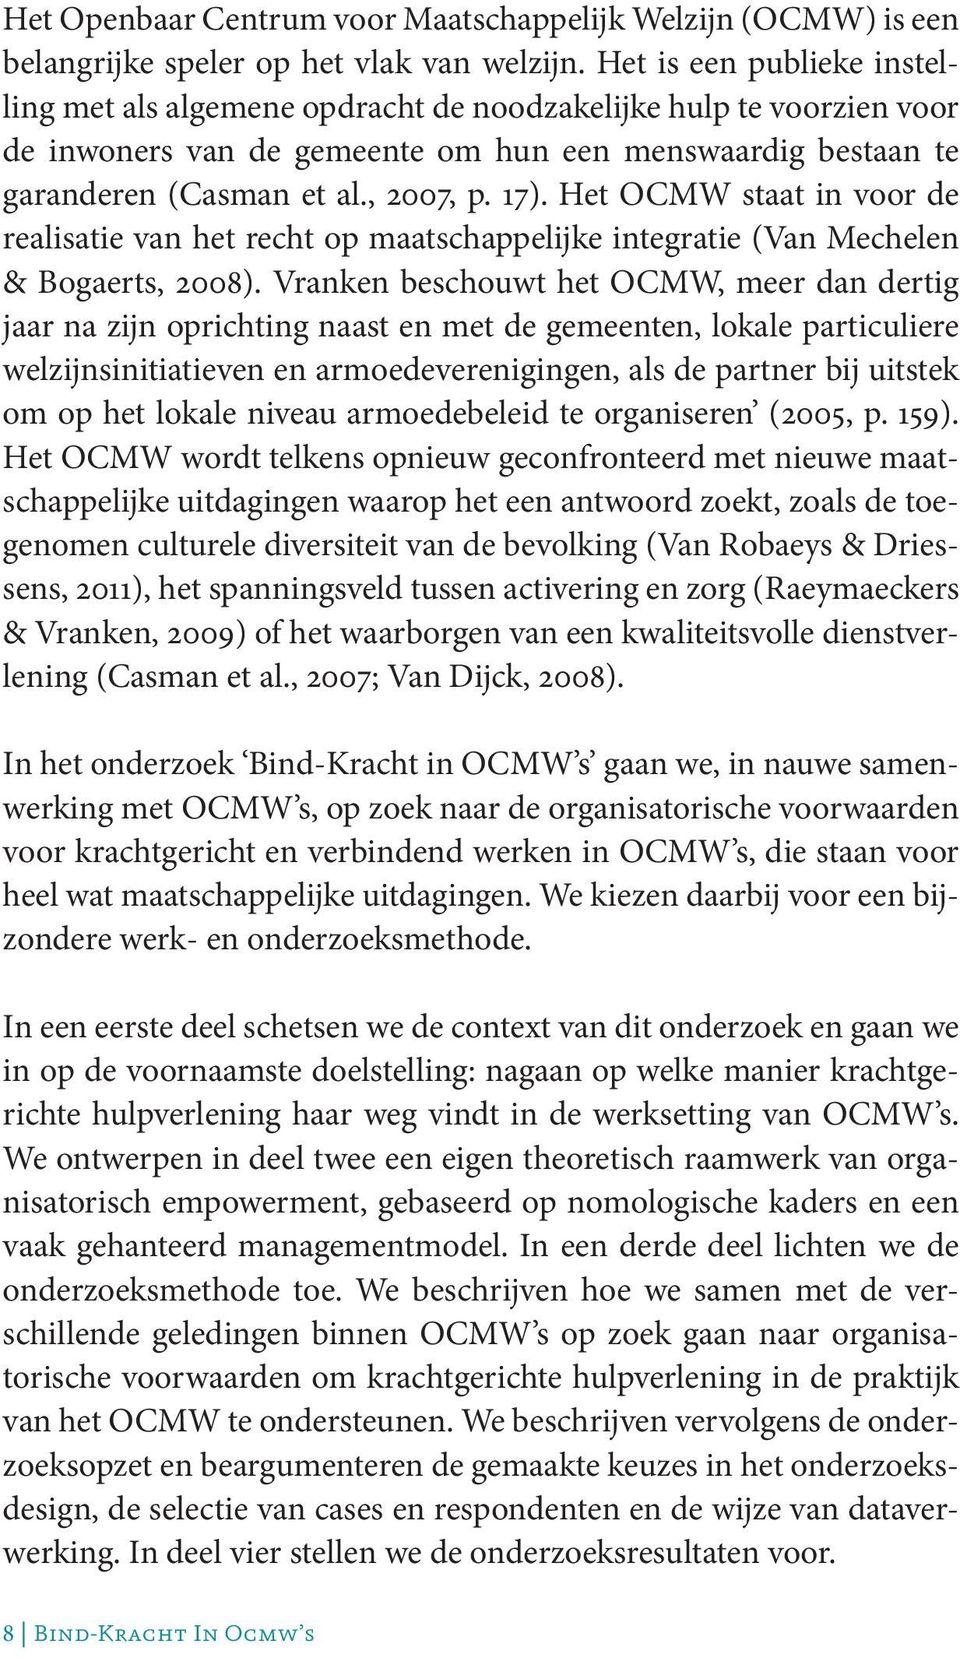 Het OCMW staat in voor de realisatie van het recht op maatschappelijke integratie (Van Mechelen & Bogaerts, 2008).